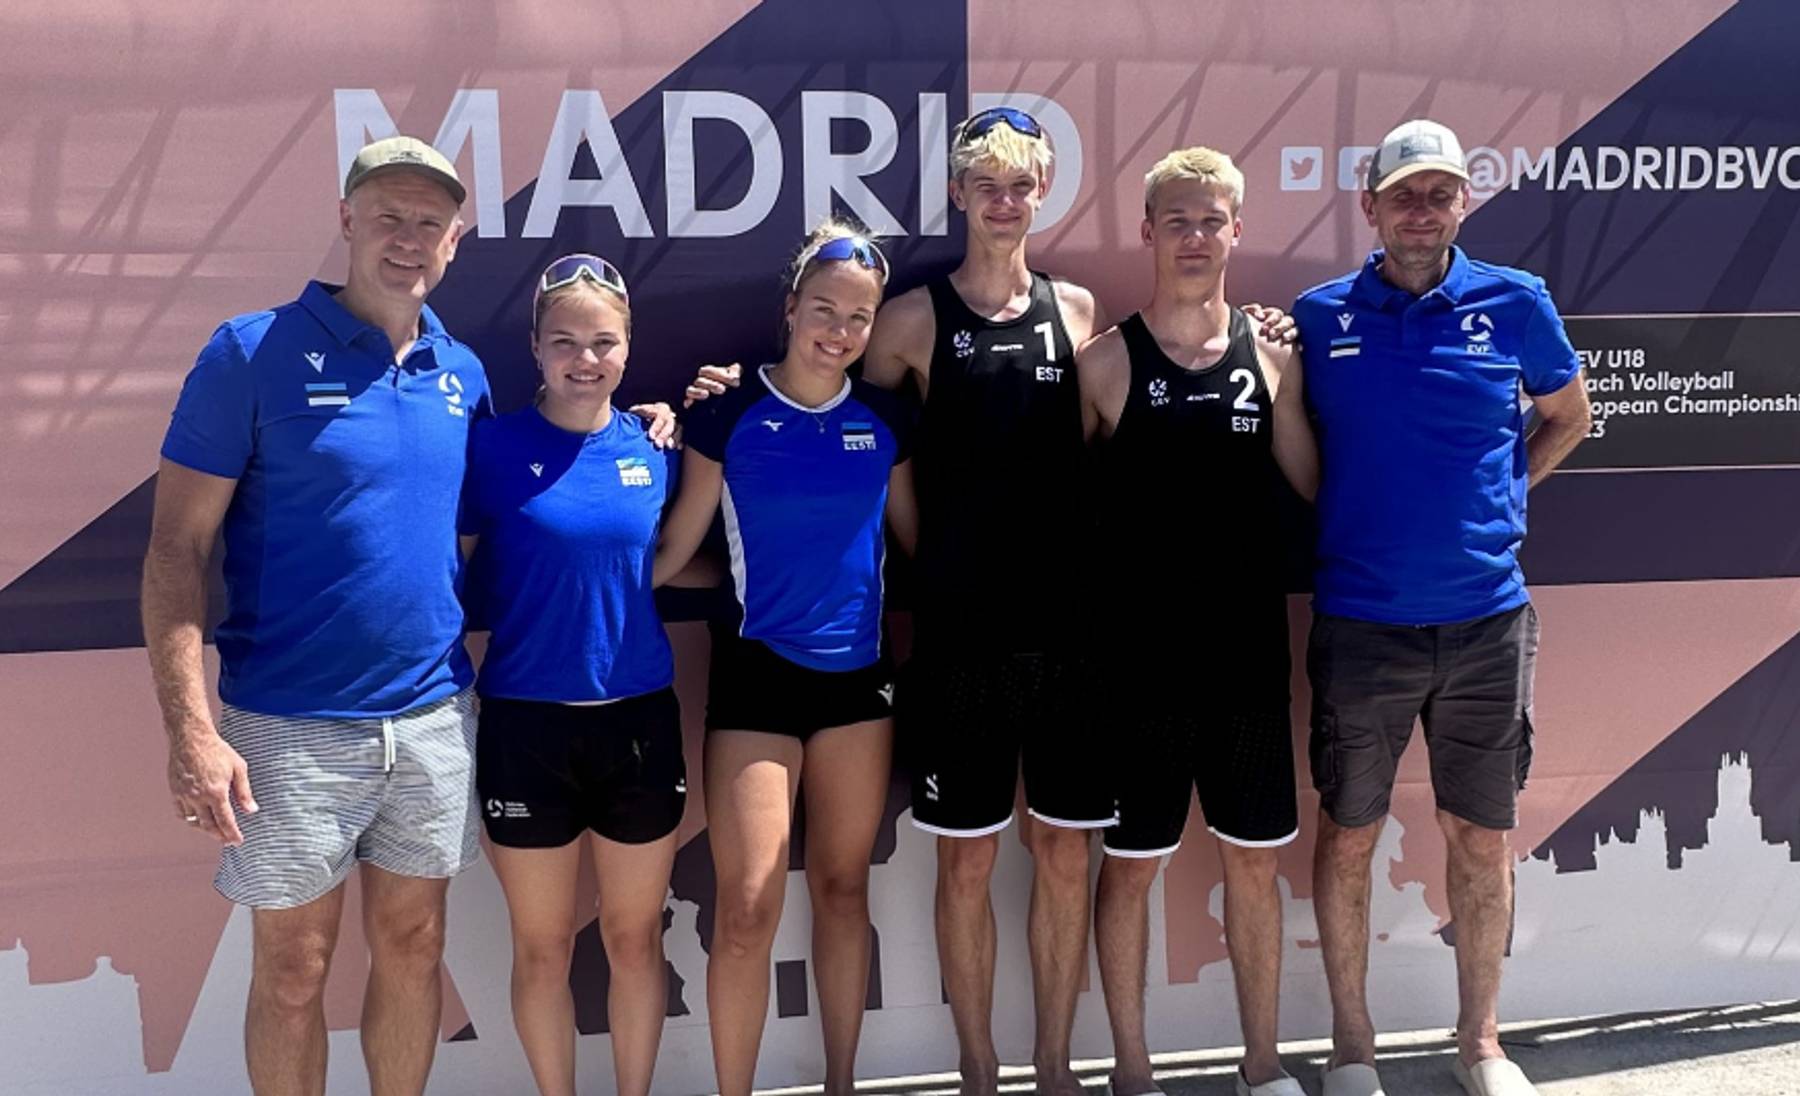 Anni ja Liisa Põldma ning Joonah Marten Üprus ja Joosep Kurik treenerite Argo Araku ja Kristjan Kurikuga U18 rannavõrkpalli EMil Madridis.